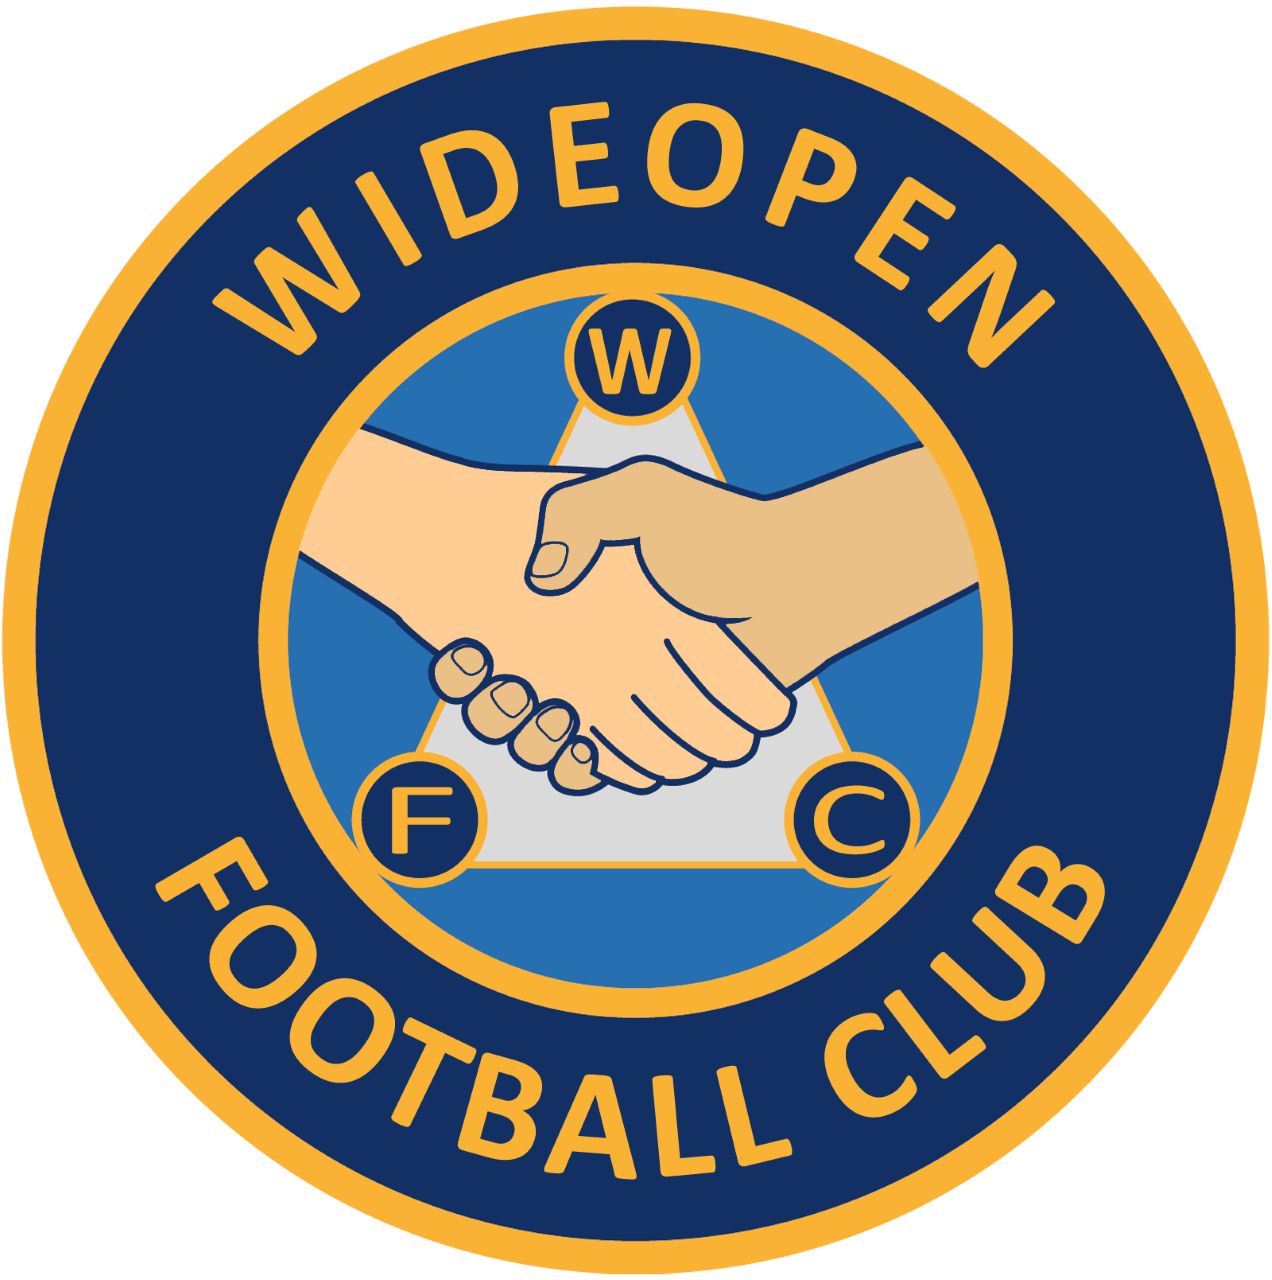 Wideopen FC